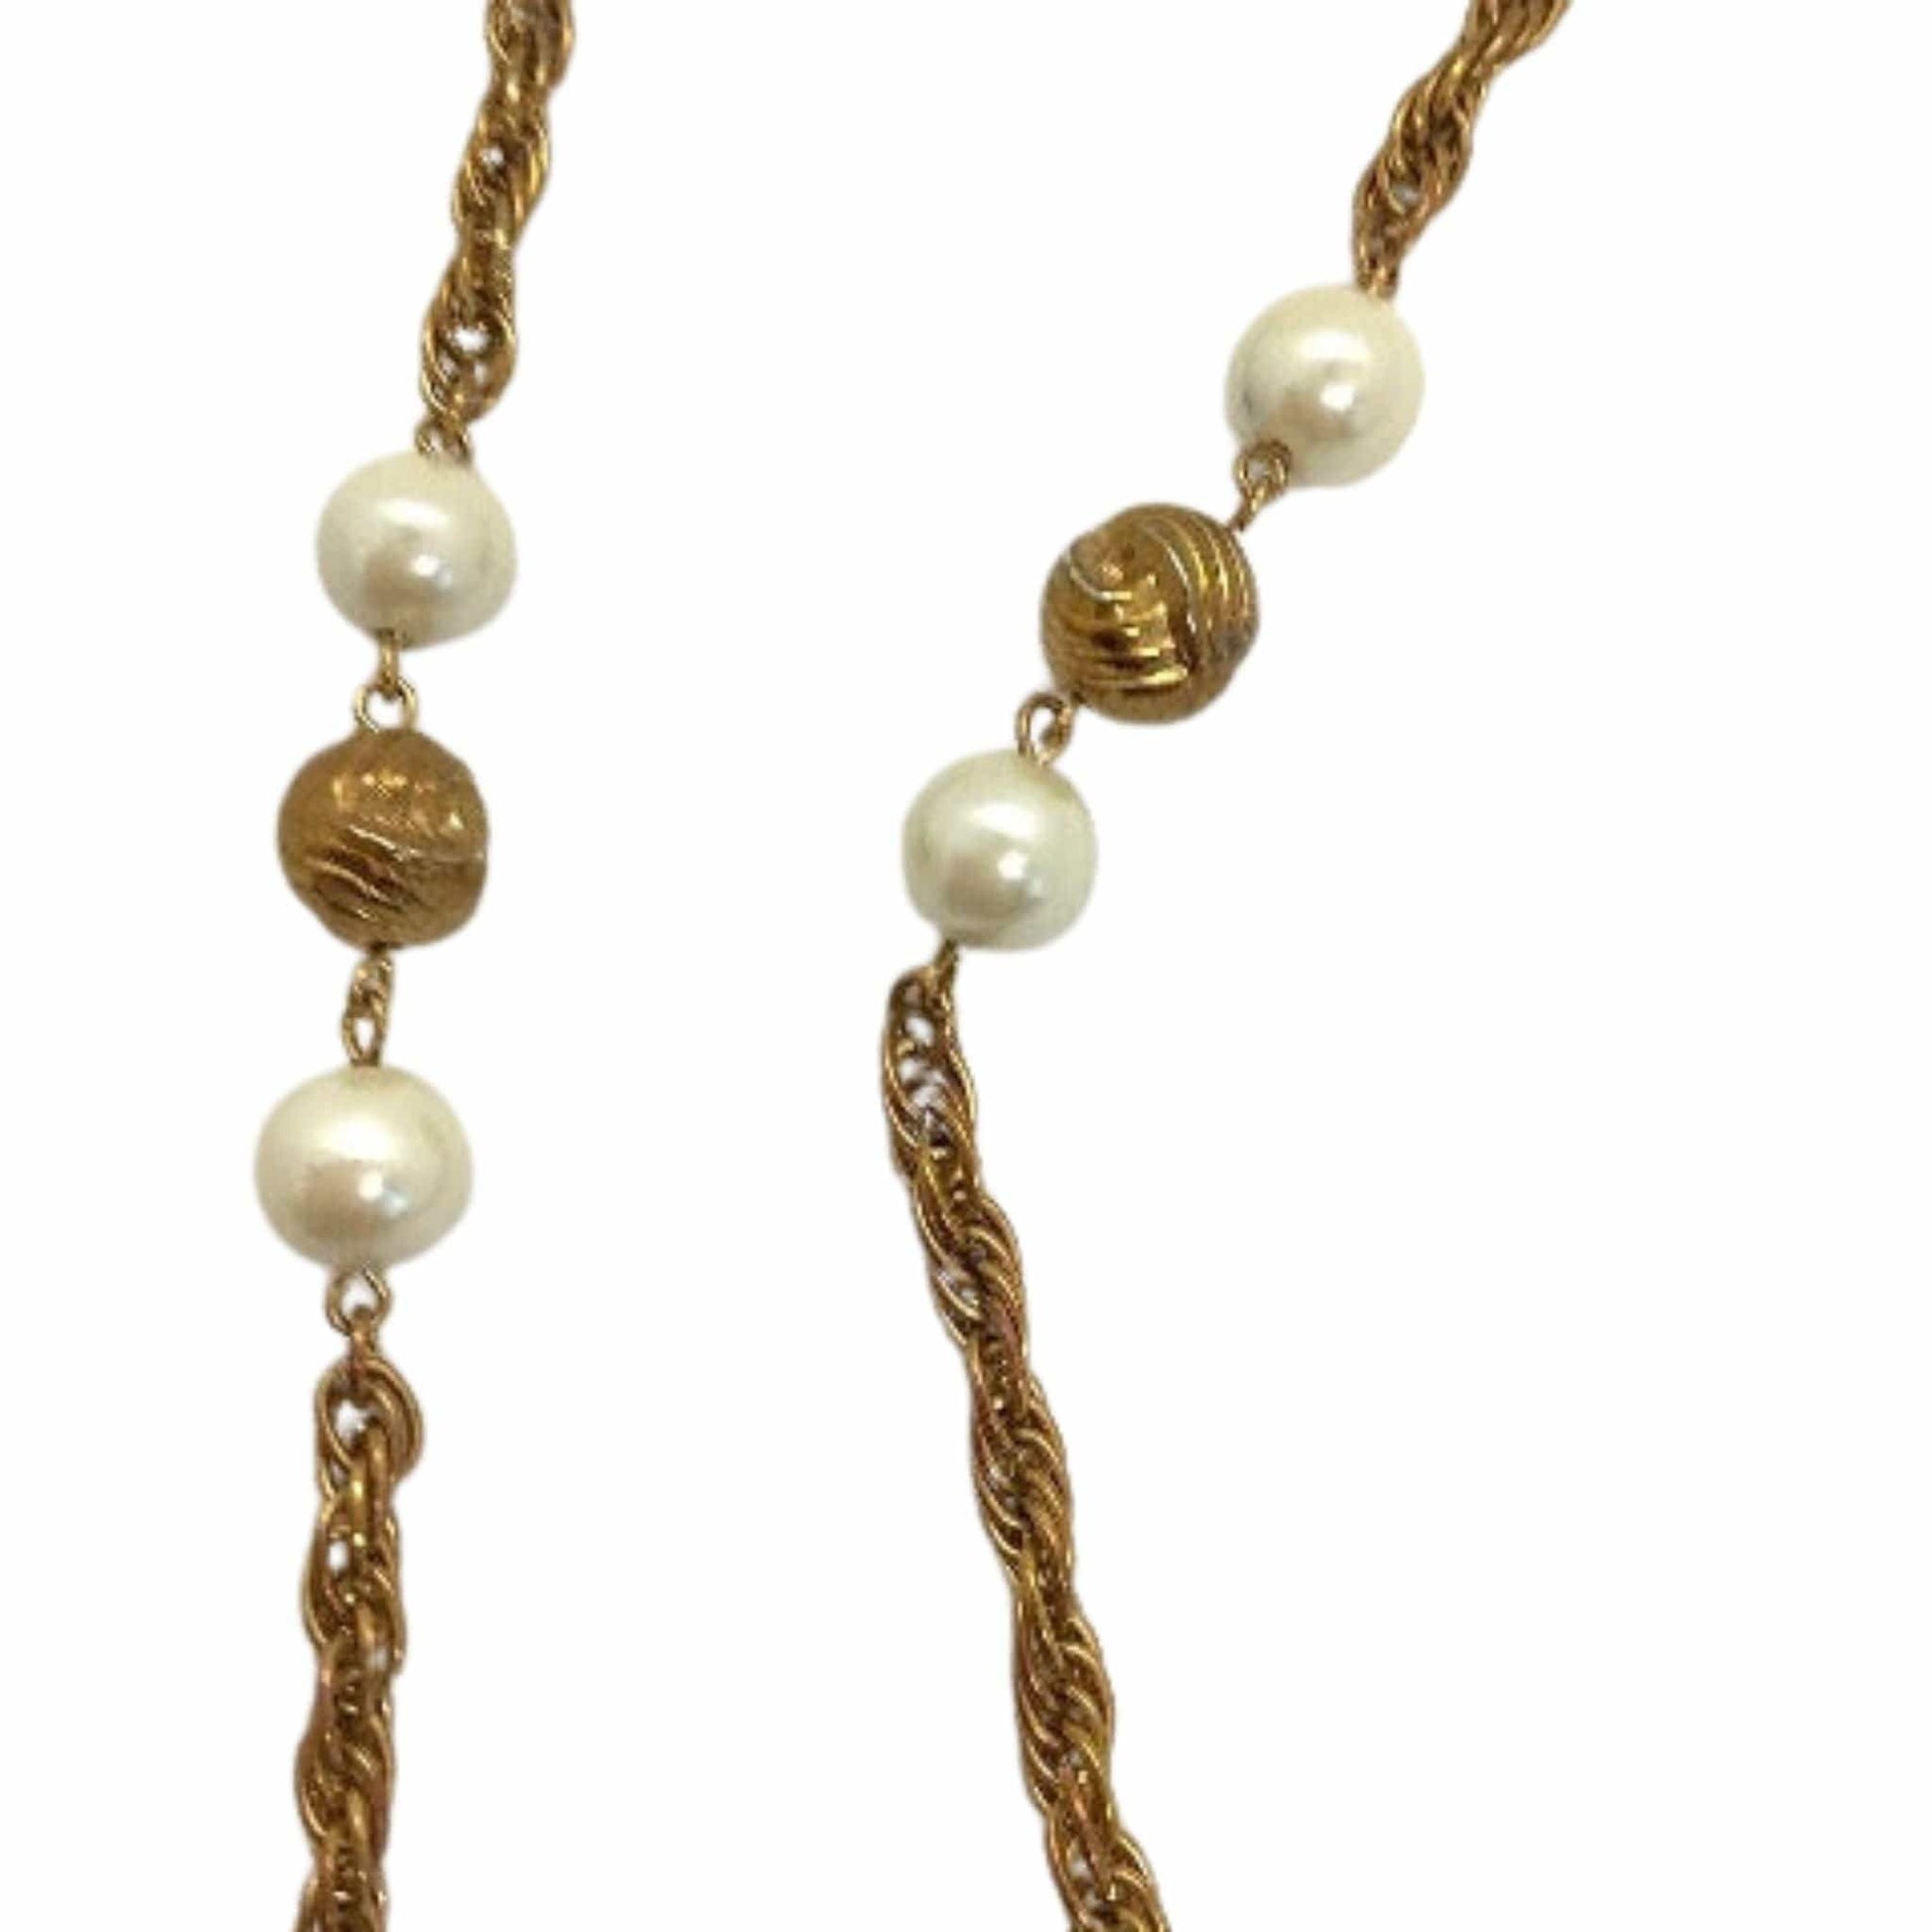 Romantic Pearl Necklace Copper / Romantic